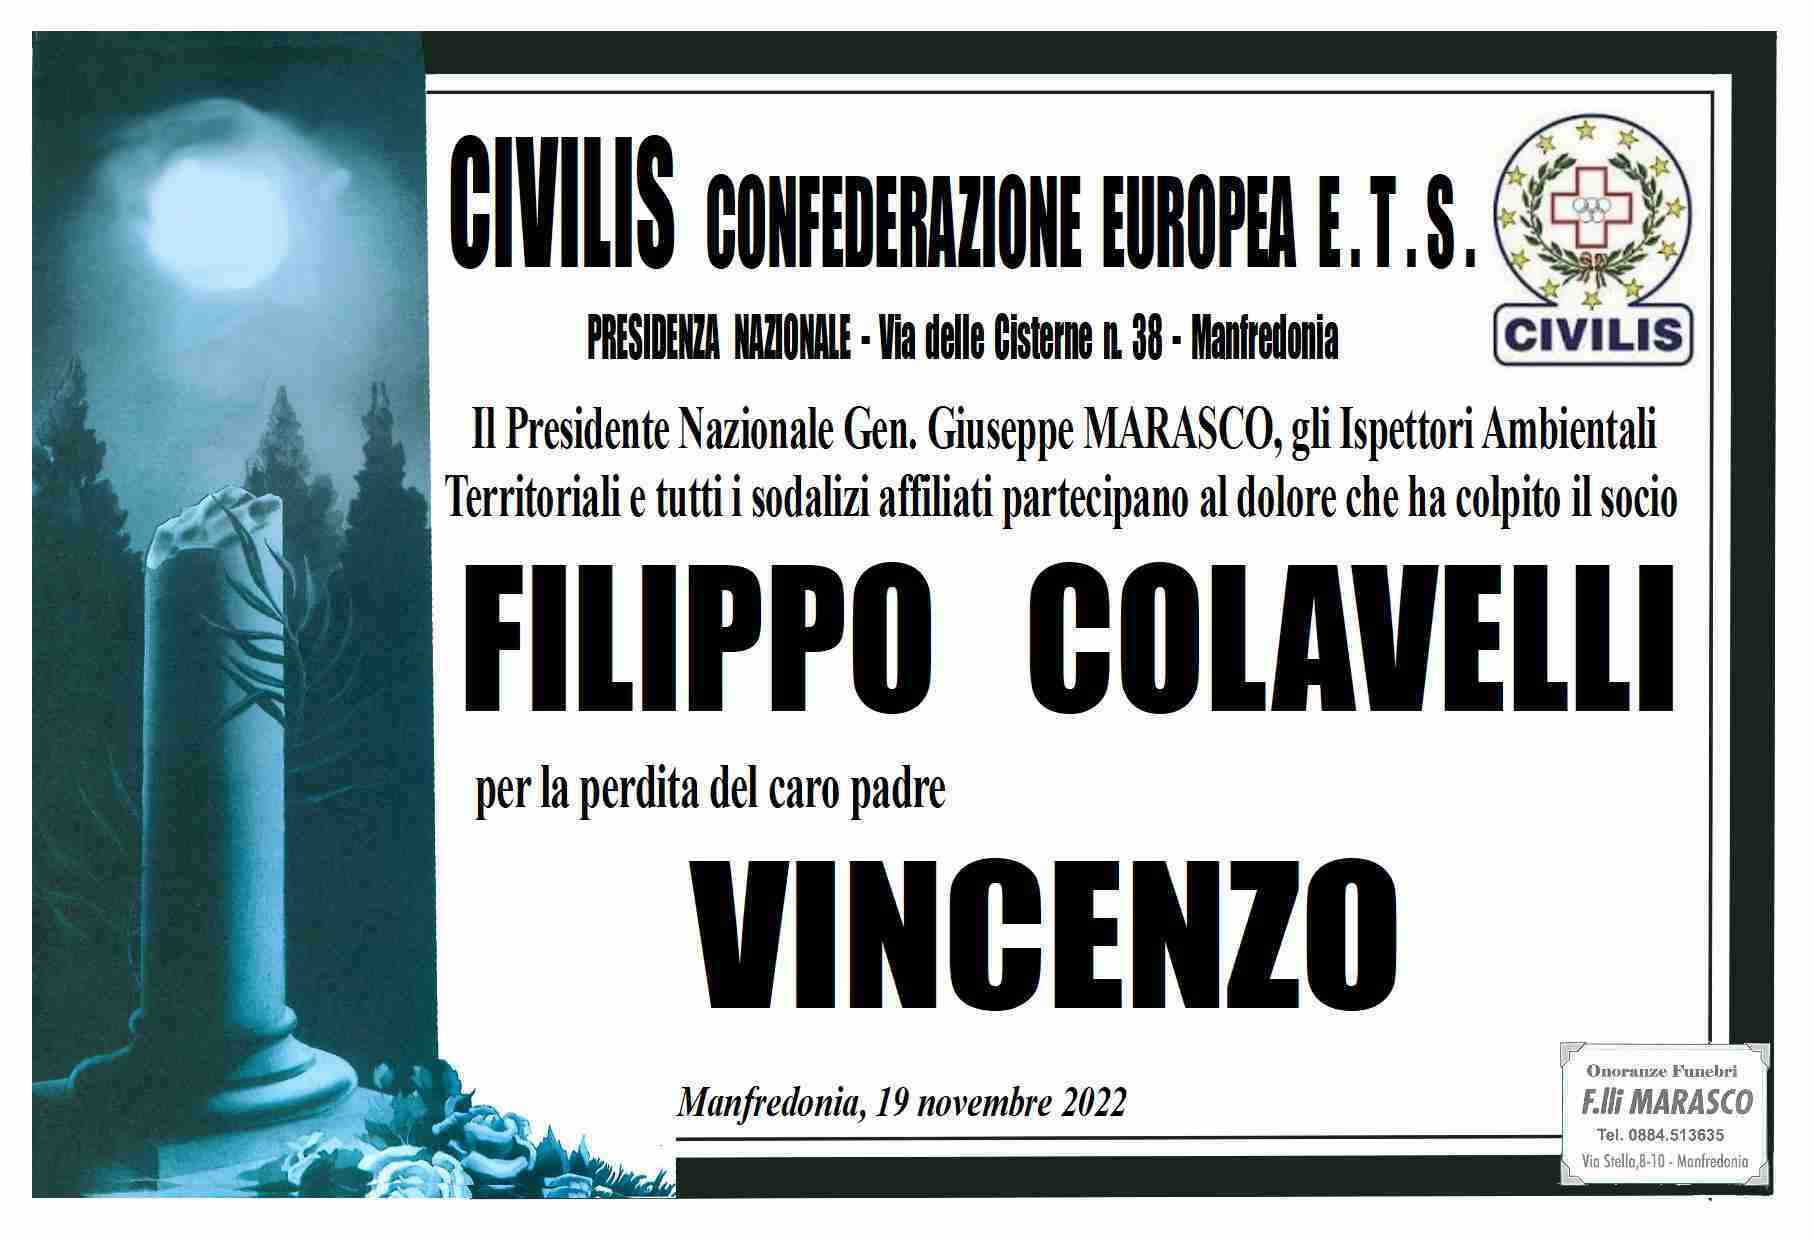 Vincenzo Colavelli